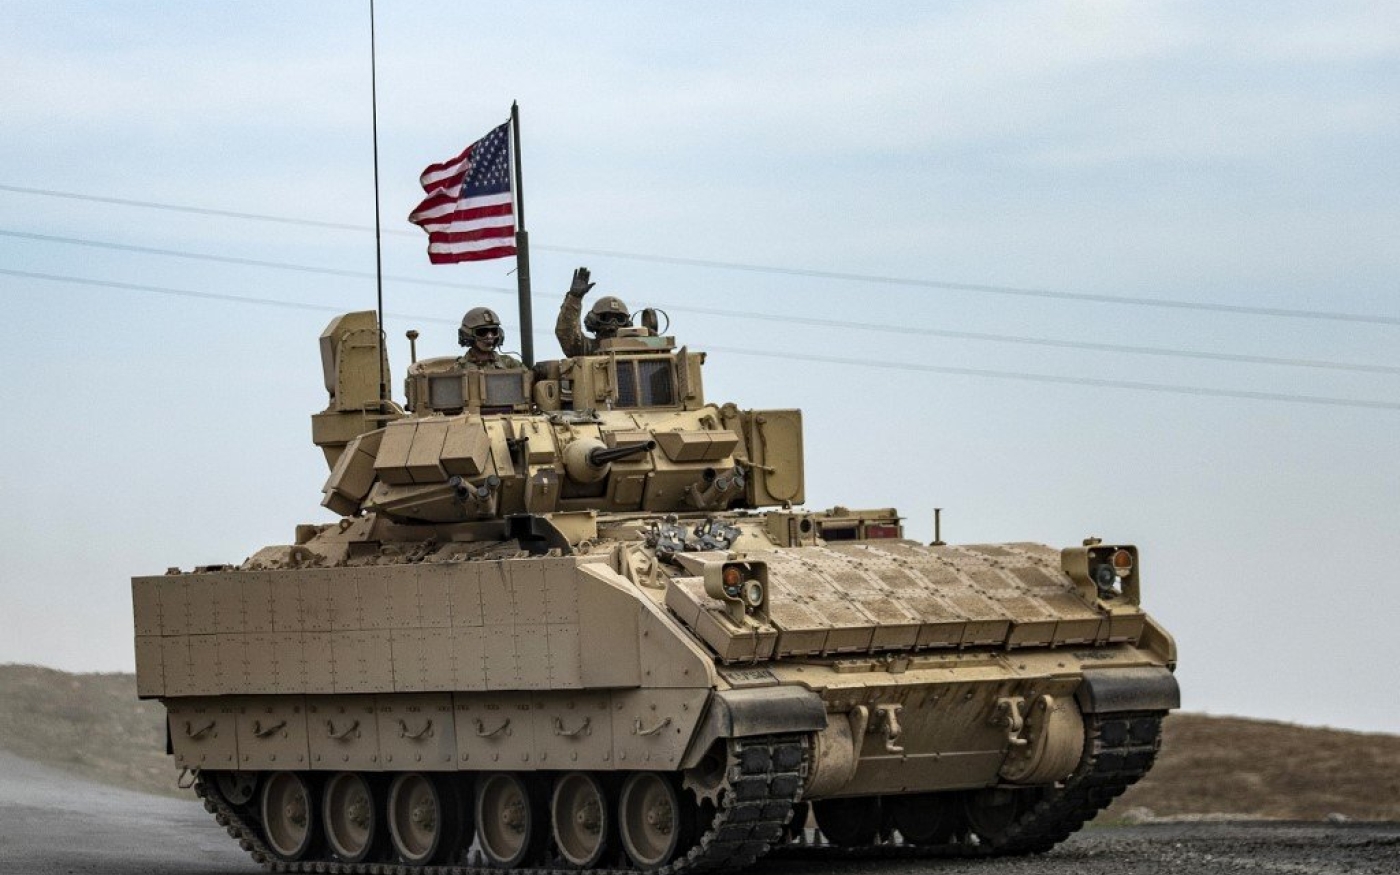 Des soldats américains patrouillent dans une zone proche de la frontière entre la Syrie et l’Irak, le 12 janvier 2021 (AFP)